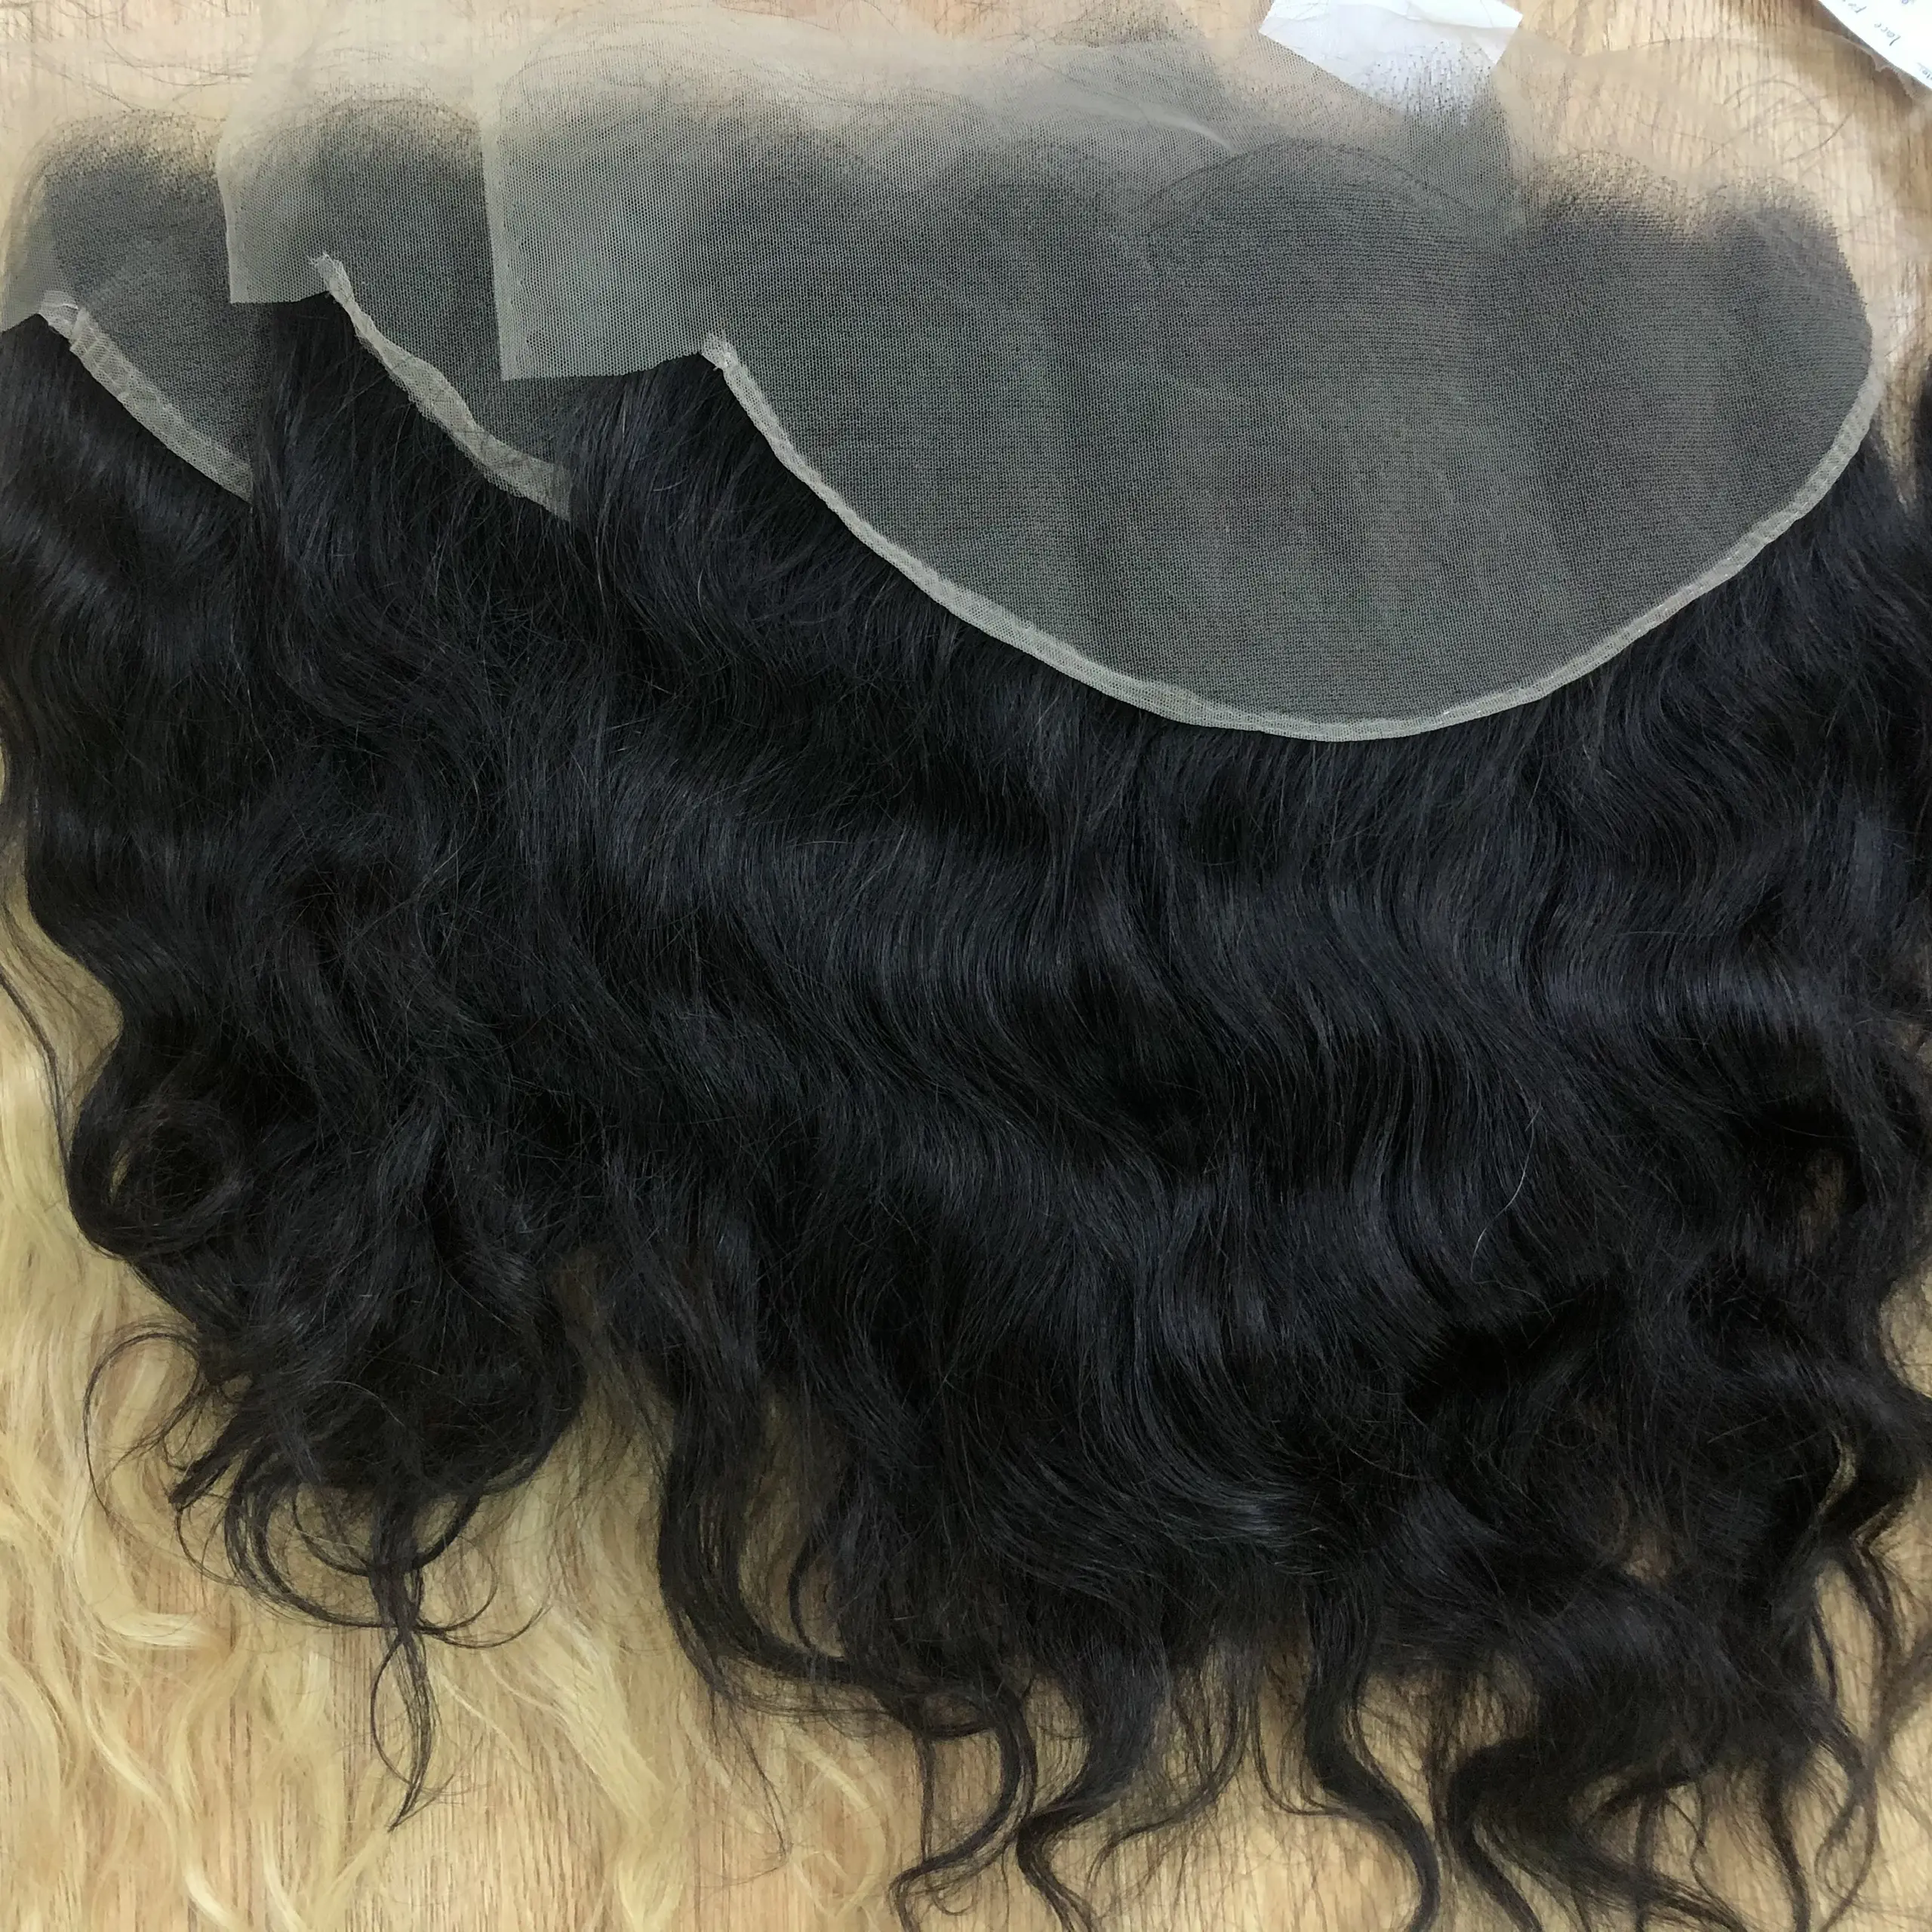 Vente en gros Hd Swiss Lace Frontal, cheveux humains avec Lace Frontal Closure,13x4 13x6 cheveux bruts cheveux humains vierges usine du Vietnam